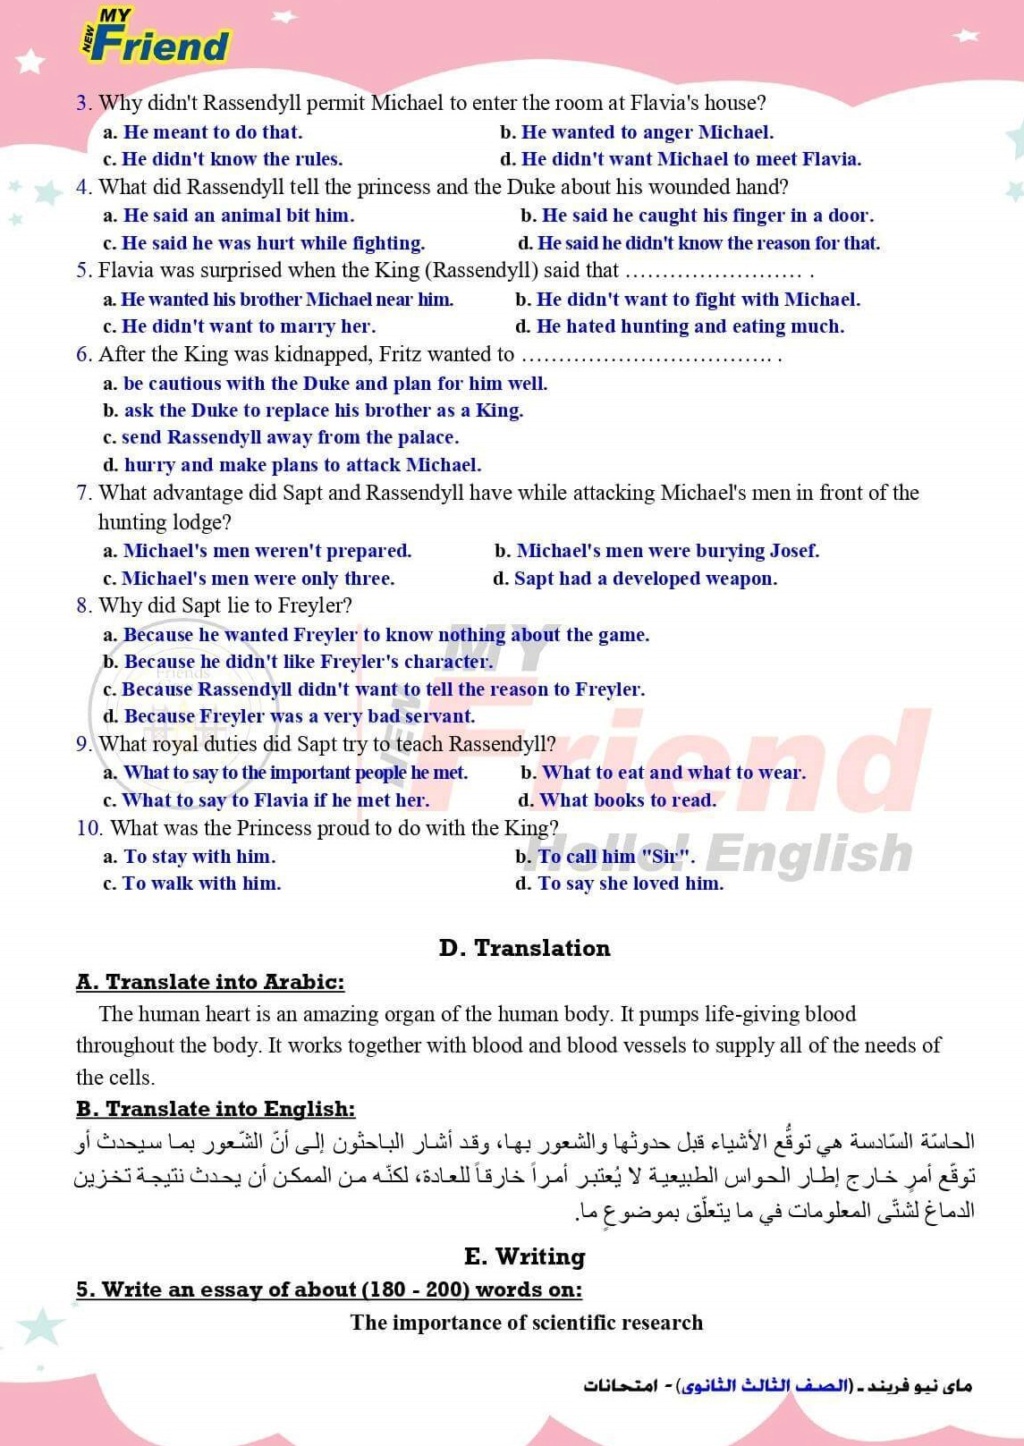 امتحان اللغة الإنجليزية للصف الثالث الثانوي شامل "نصف المنهج" Exam-e15